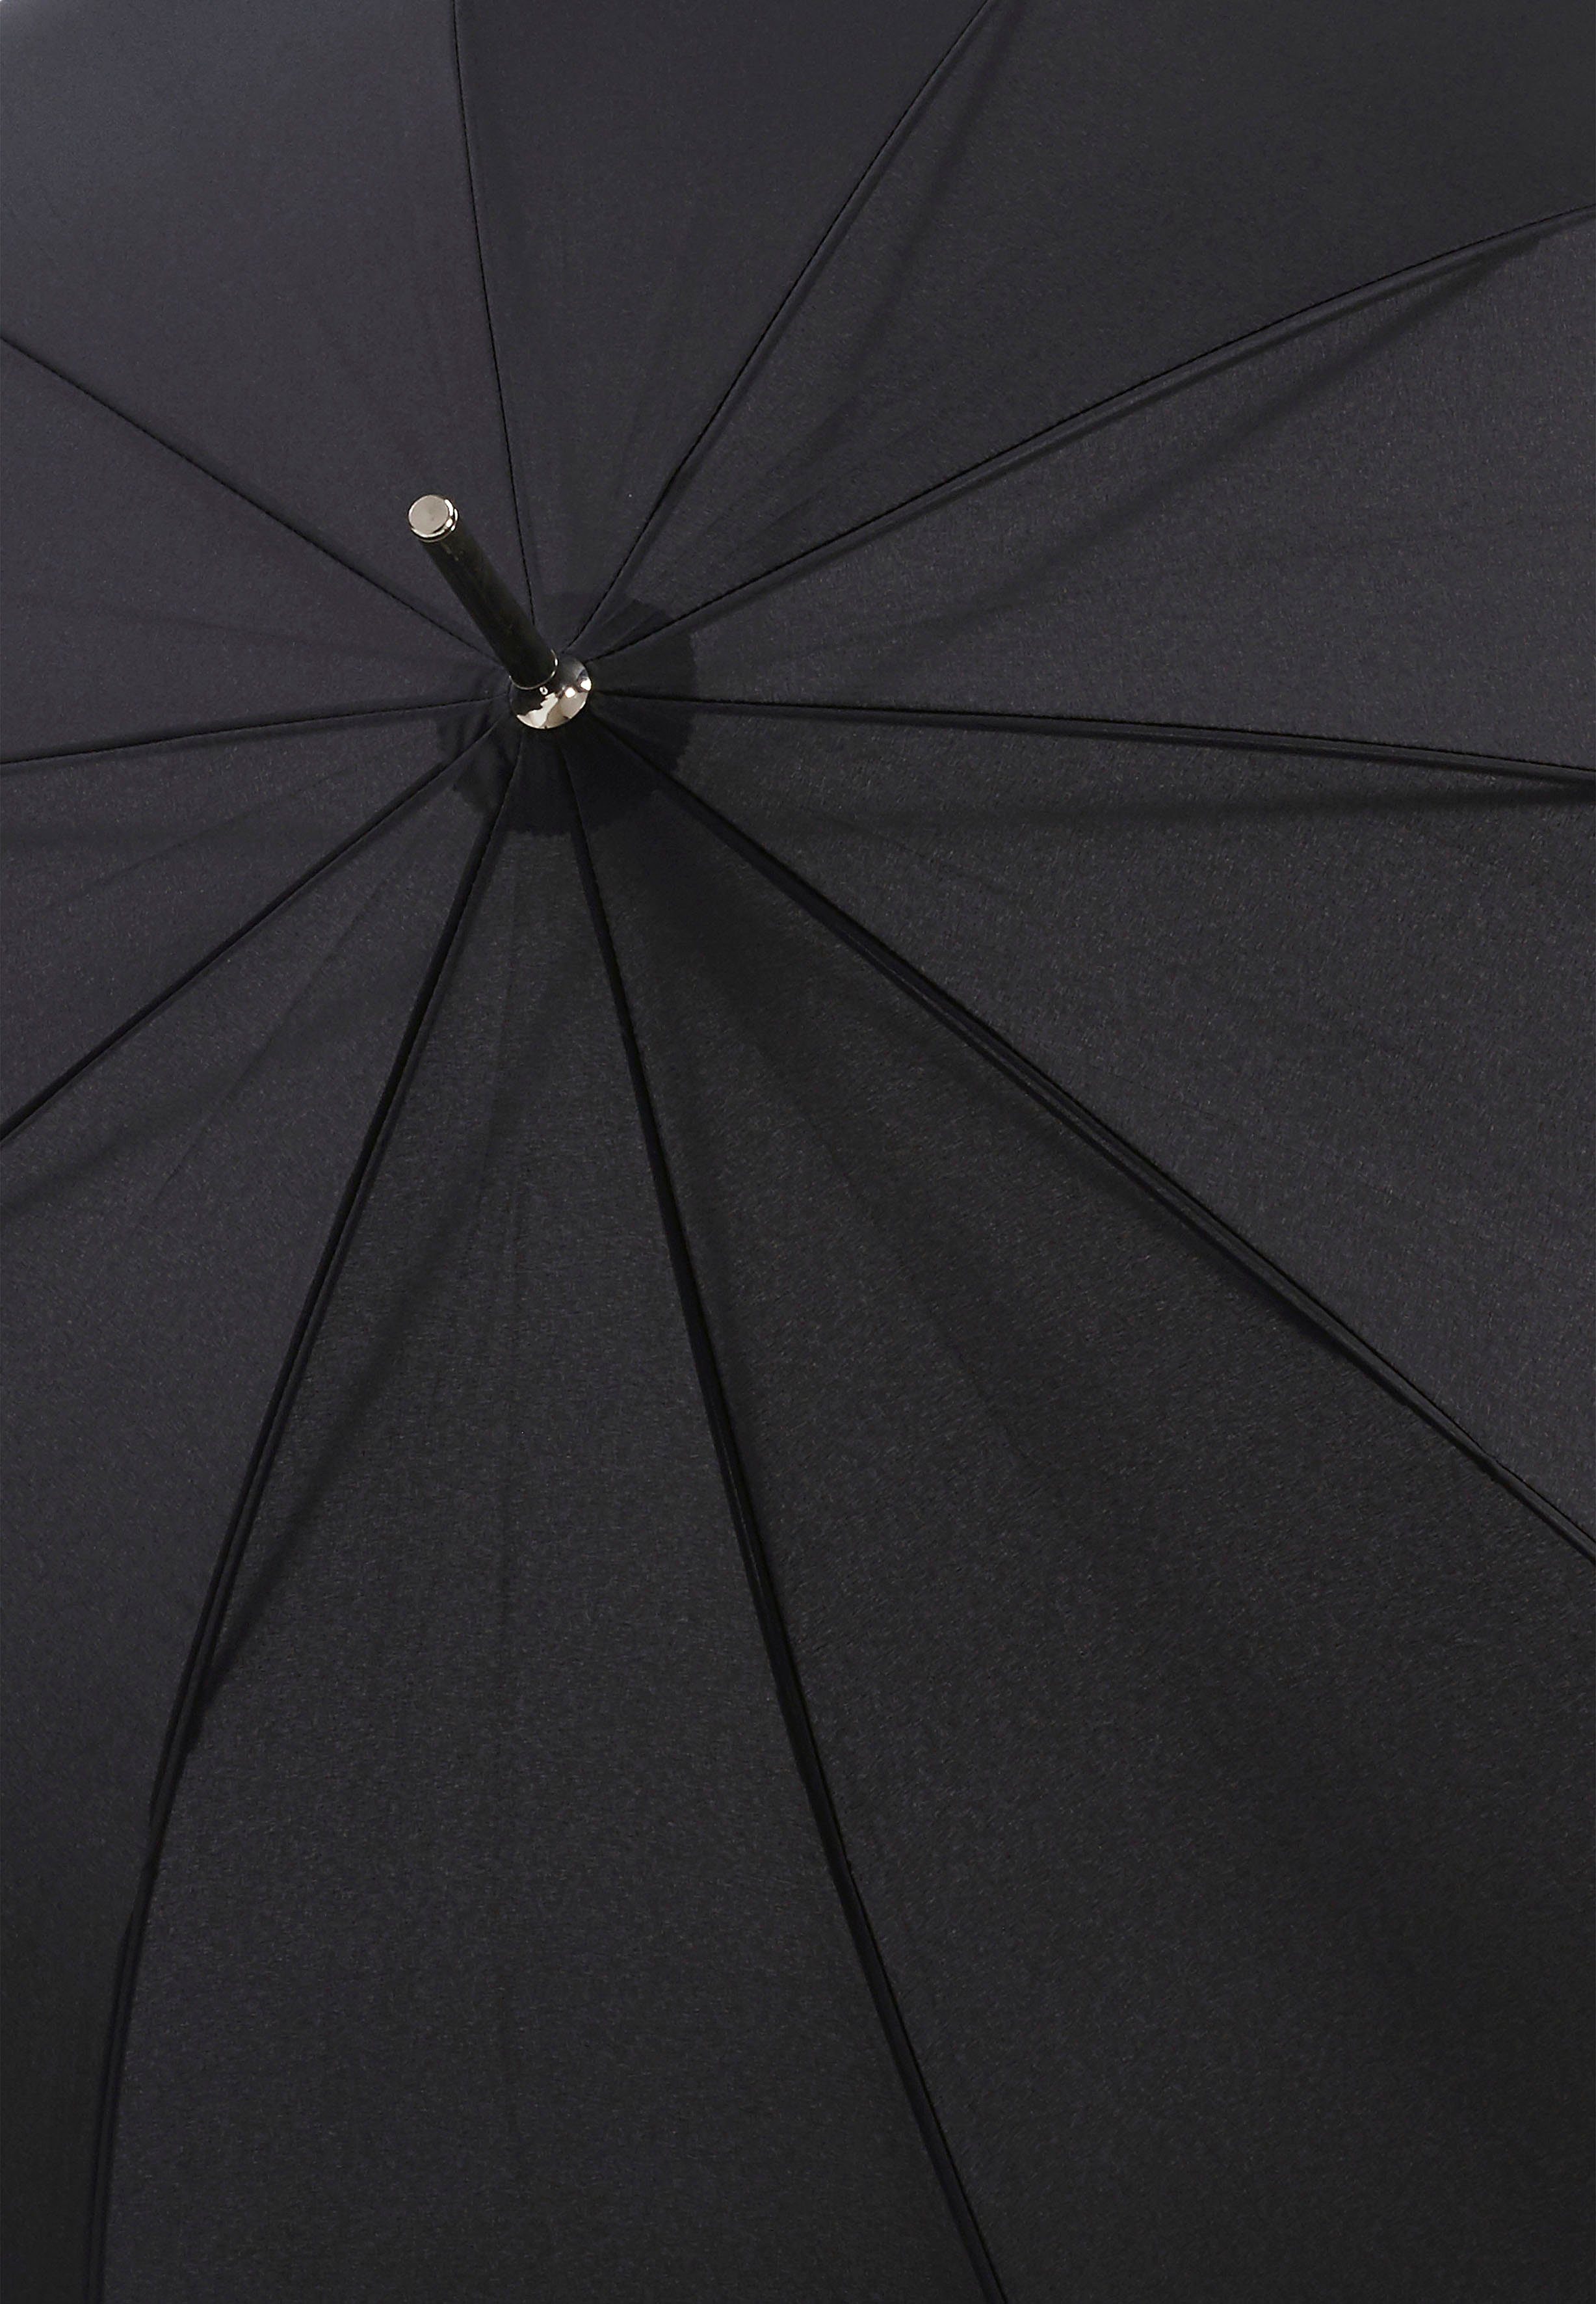 AC, Langregenschirm doppler® Carbonsteel schwarz Long